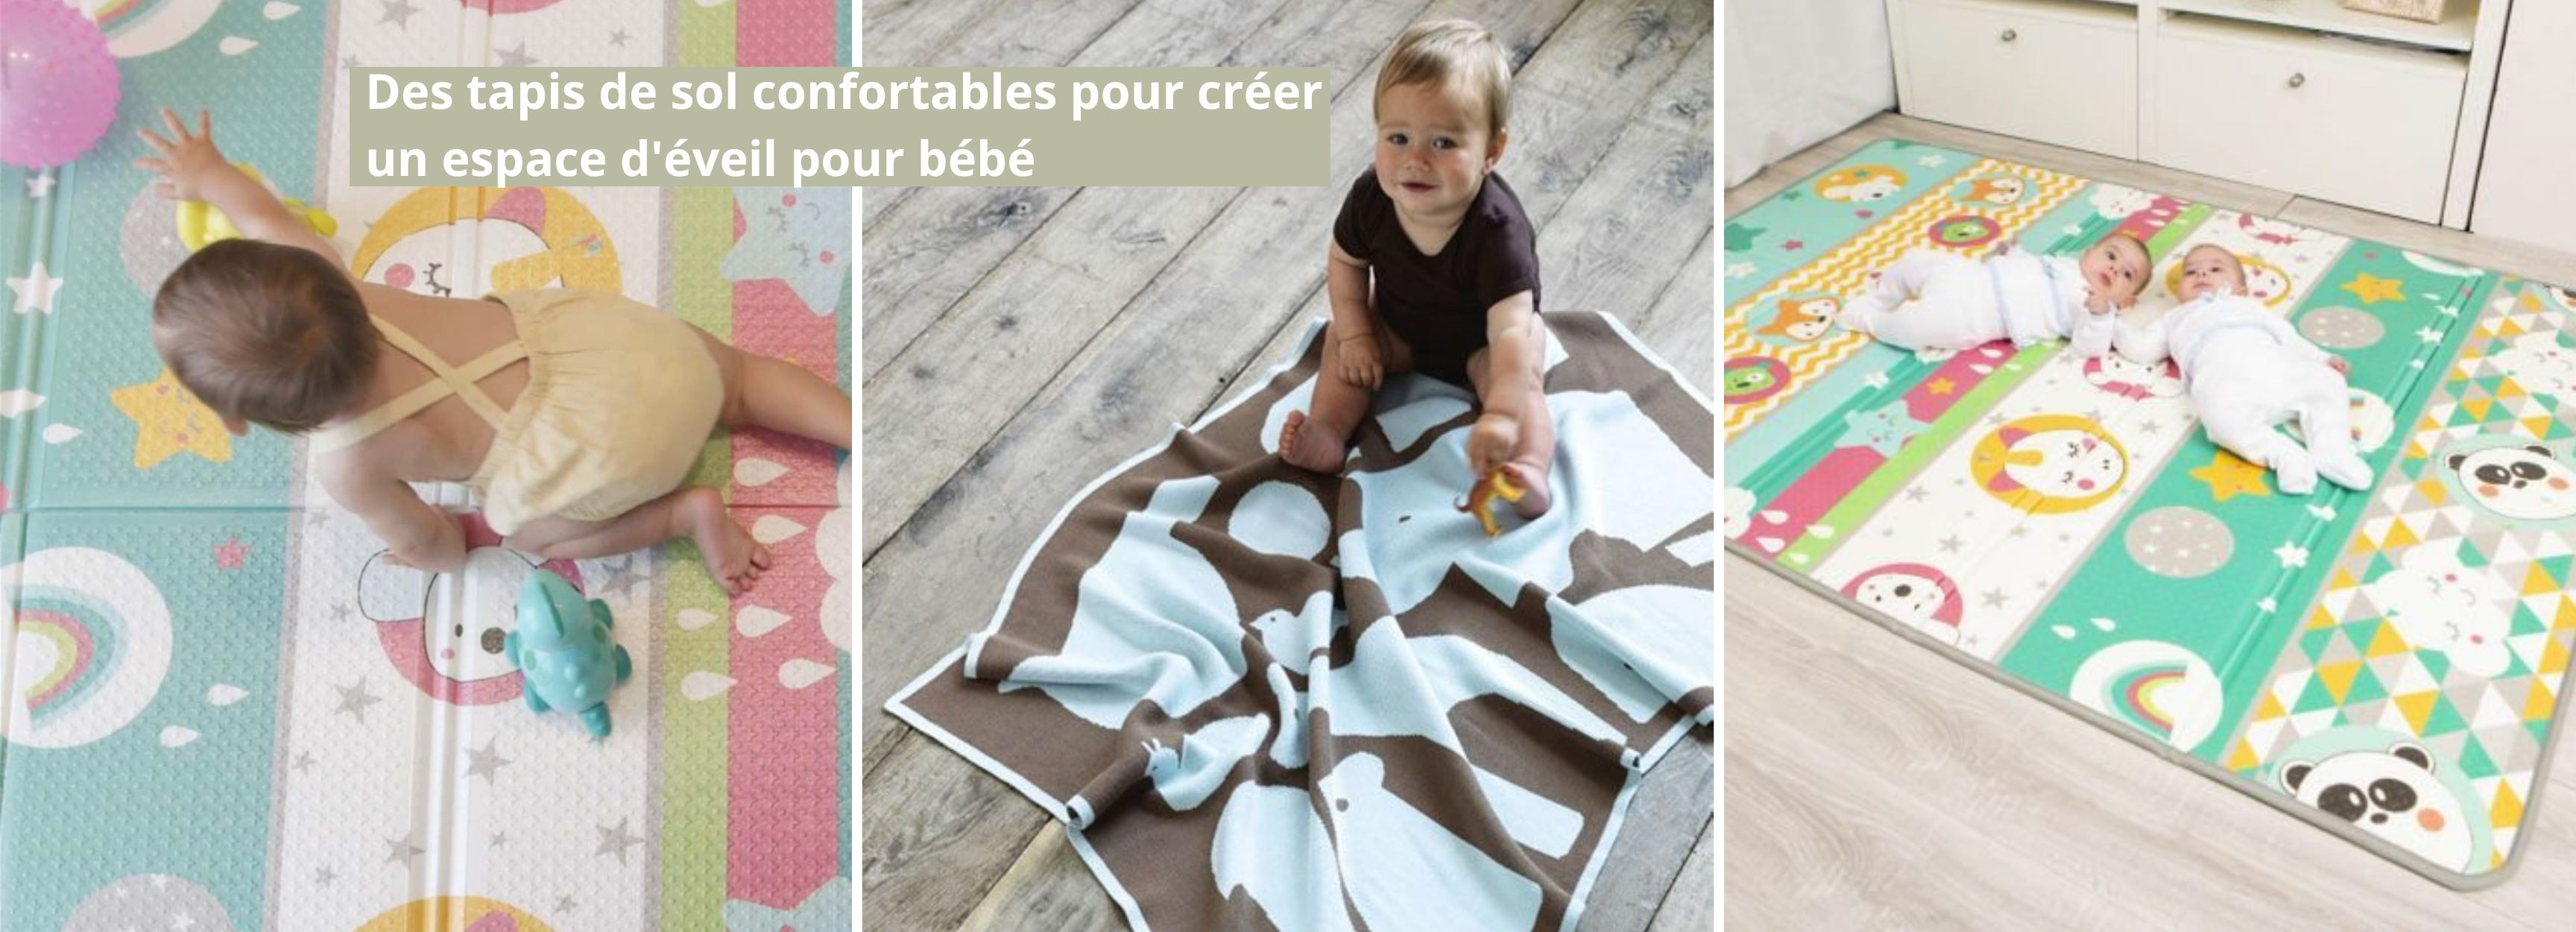 Des tapis de sol confortables pour créer un espace d'éveil pour bébé